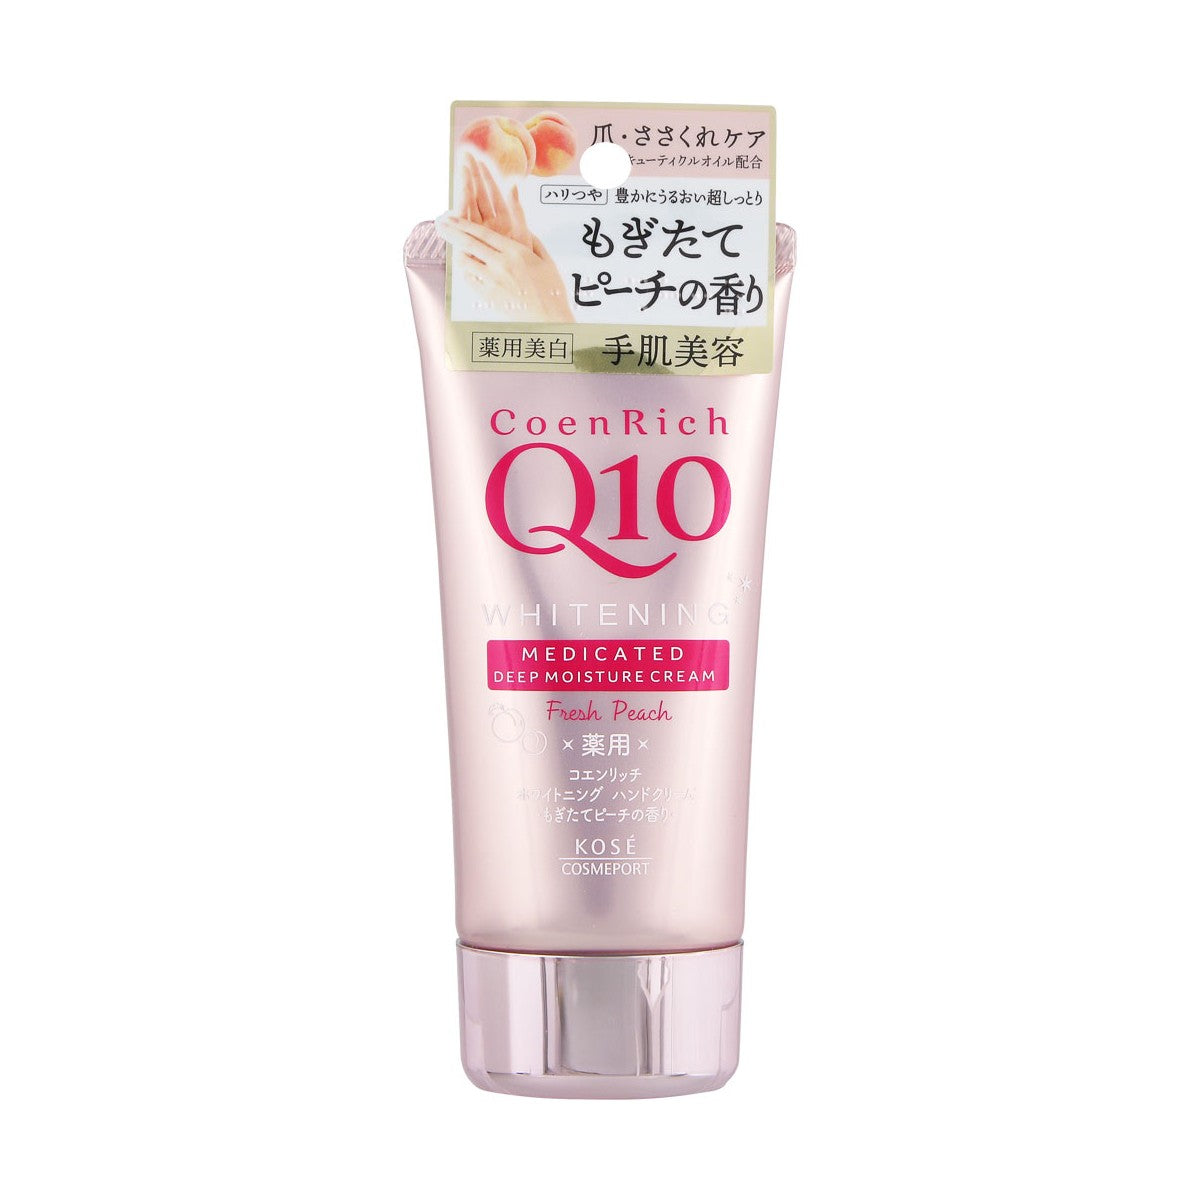 KOSE Coenrich Q10 Whitening Hand Cream - TokTok Beauty